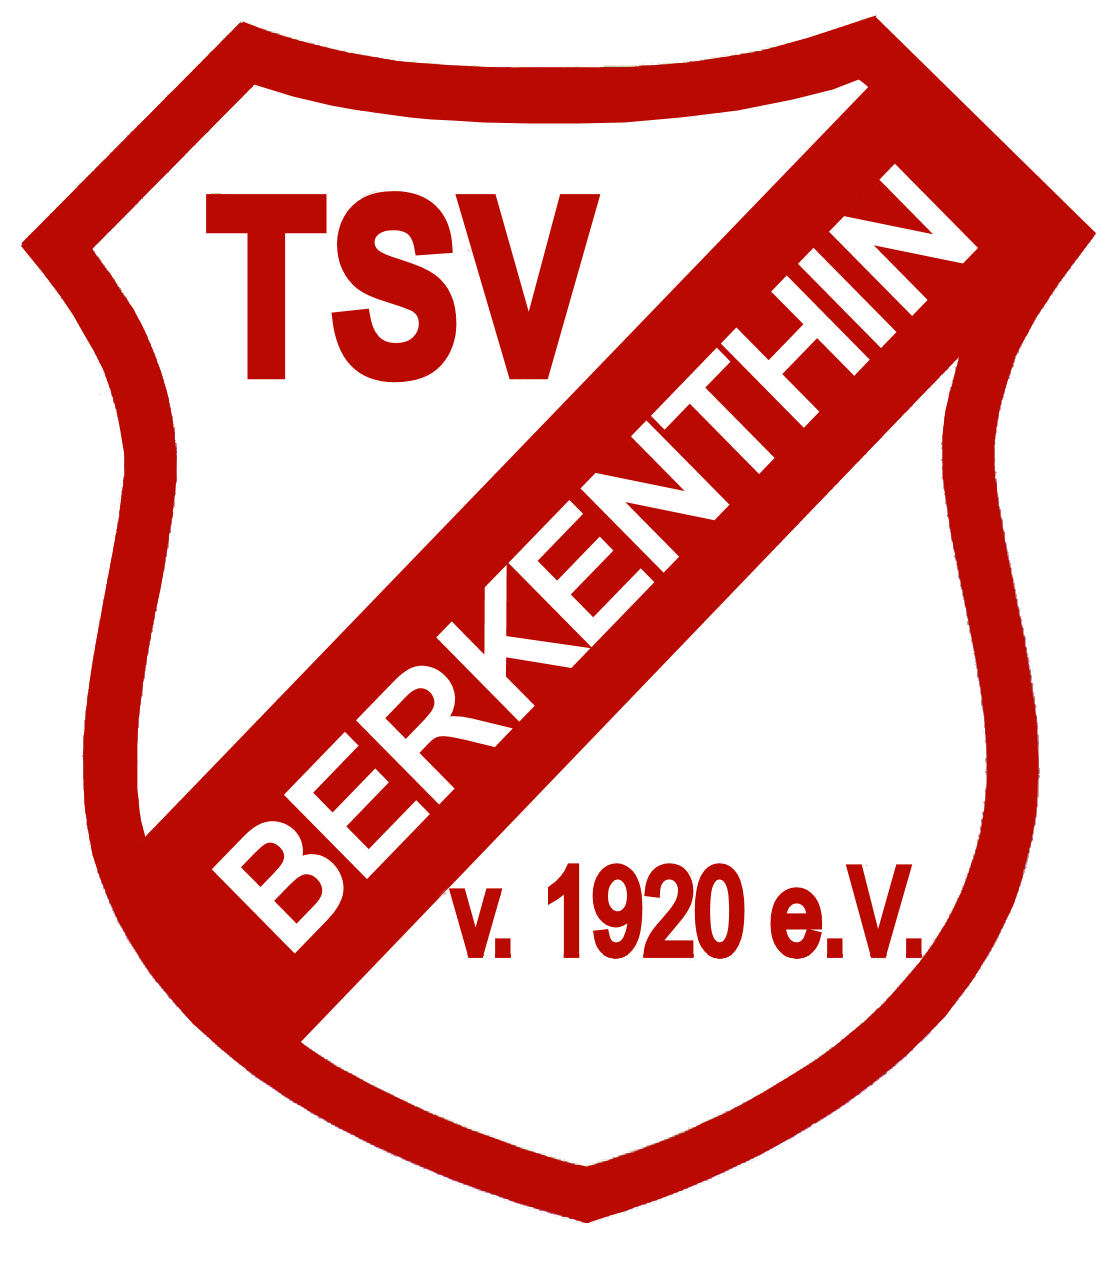 TSV Berkenthin Wird Erneut Mit Jugend-Award Ausgezeichnet